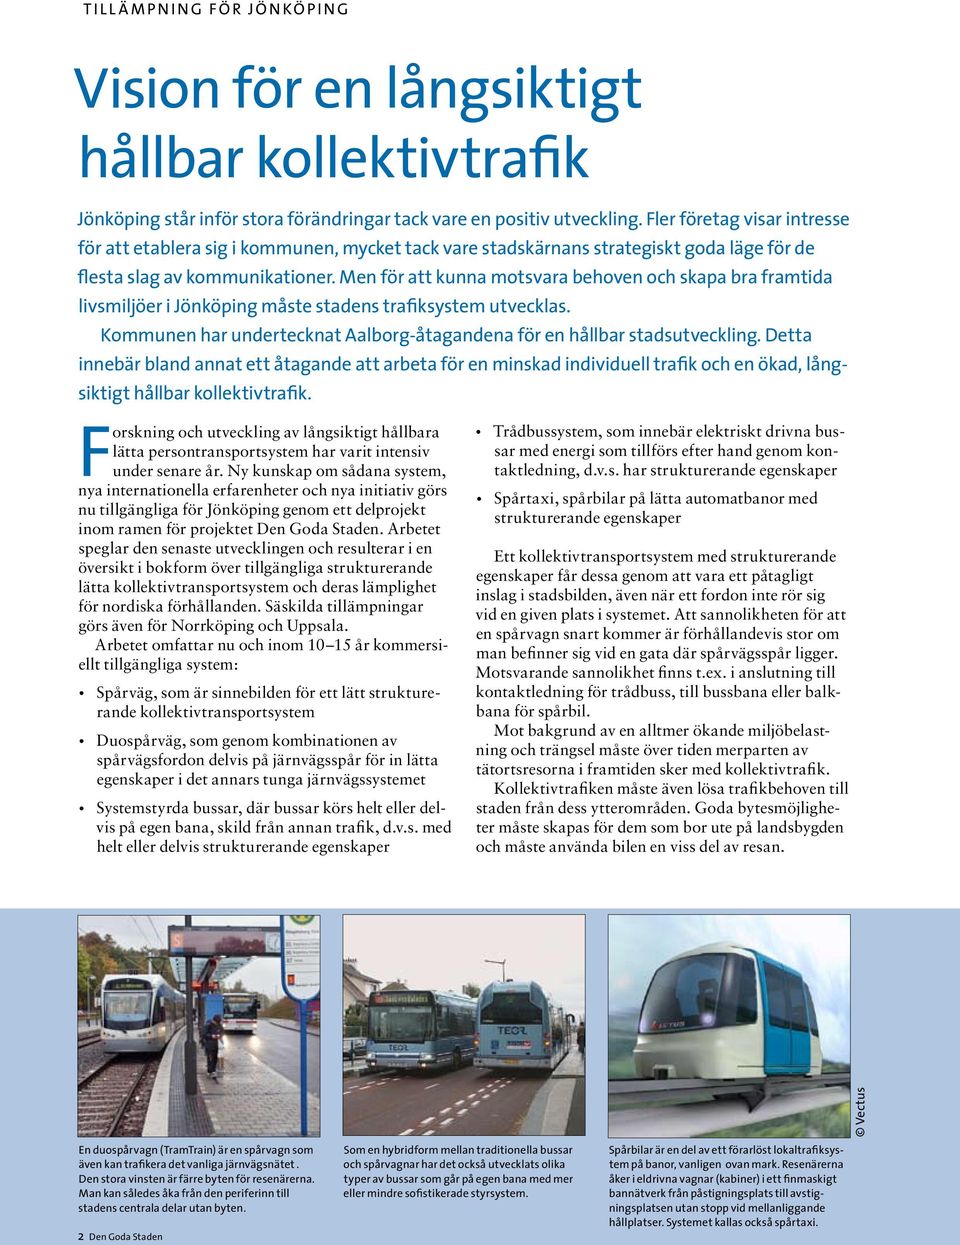 Men för att kunna motsvara behoven och skapa bra framtida livsmiljöer i Jönköping måste stadens trafiksystem utvecklas. Kommunen har undertecknat Aalborg-åtagandena för en hållbar stadsutveckling.